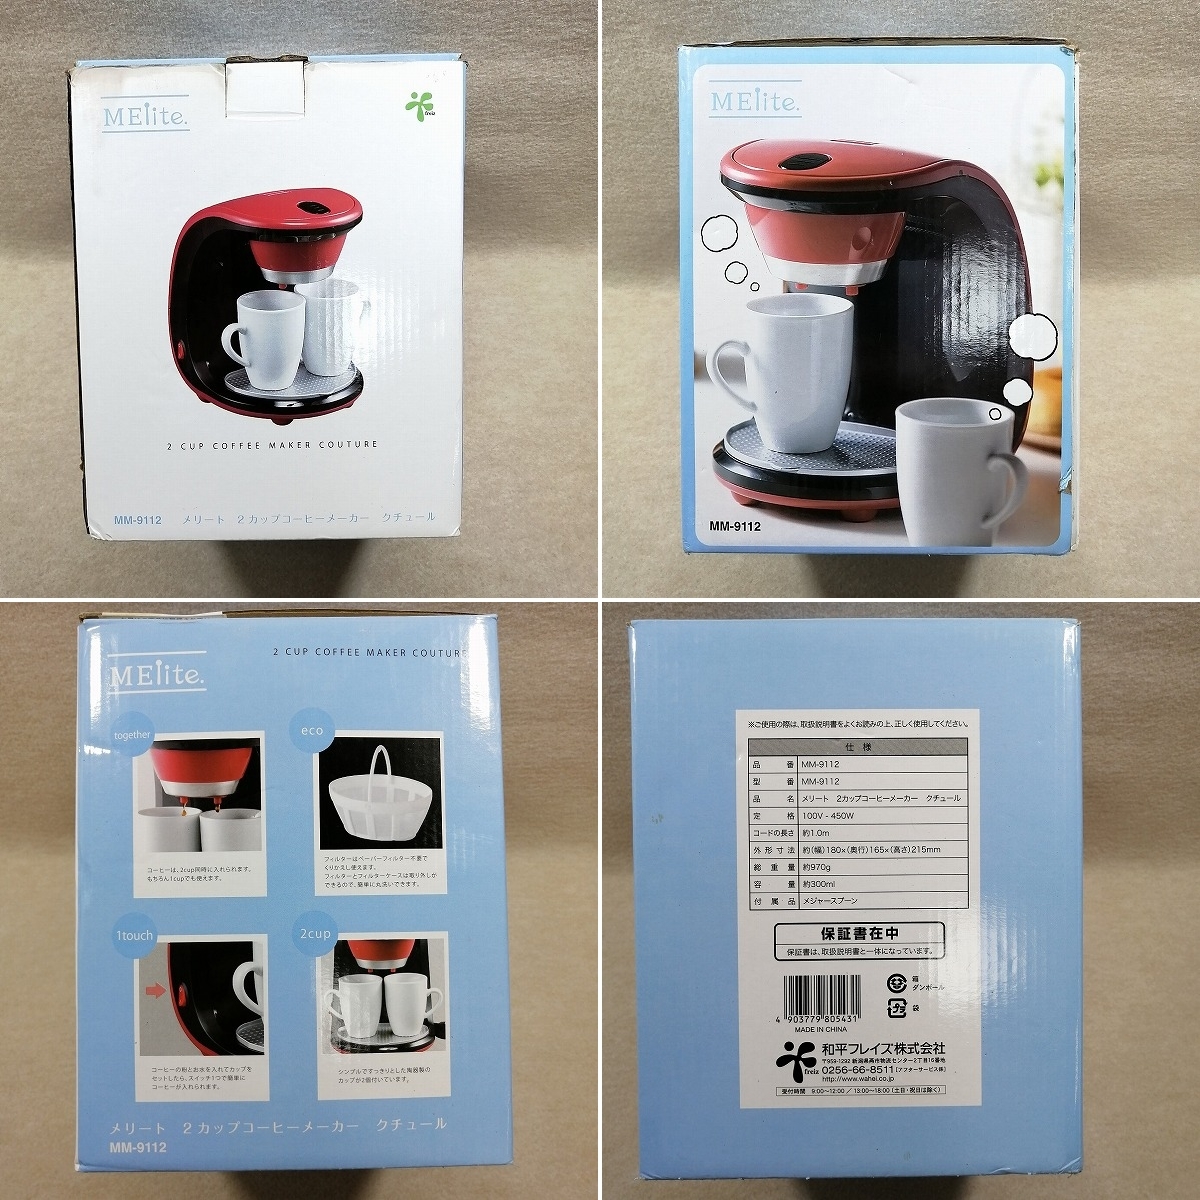 メリート 2カップコーヒーメーカー クチュール MM-9112 - コーヒーメーカー